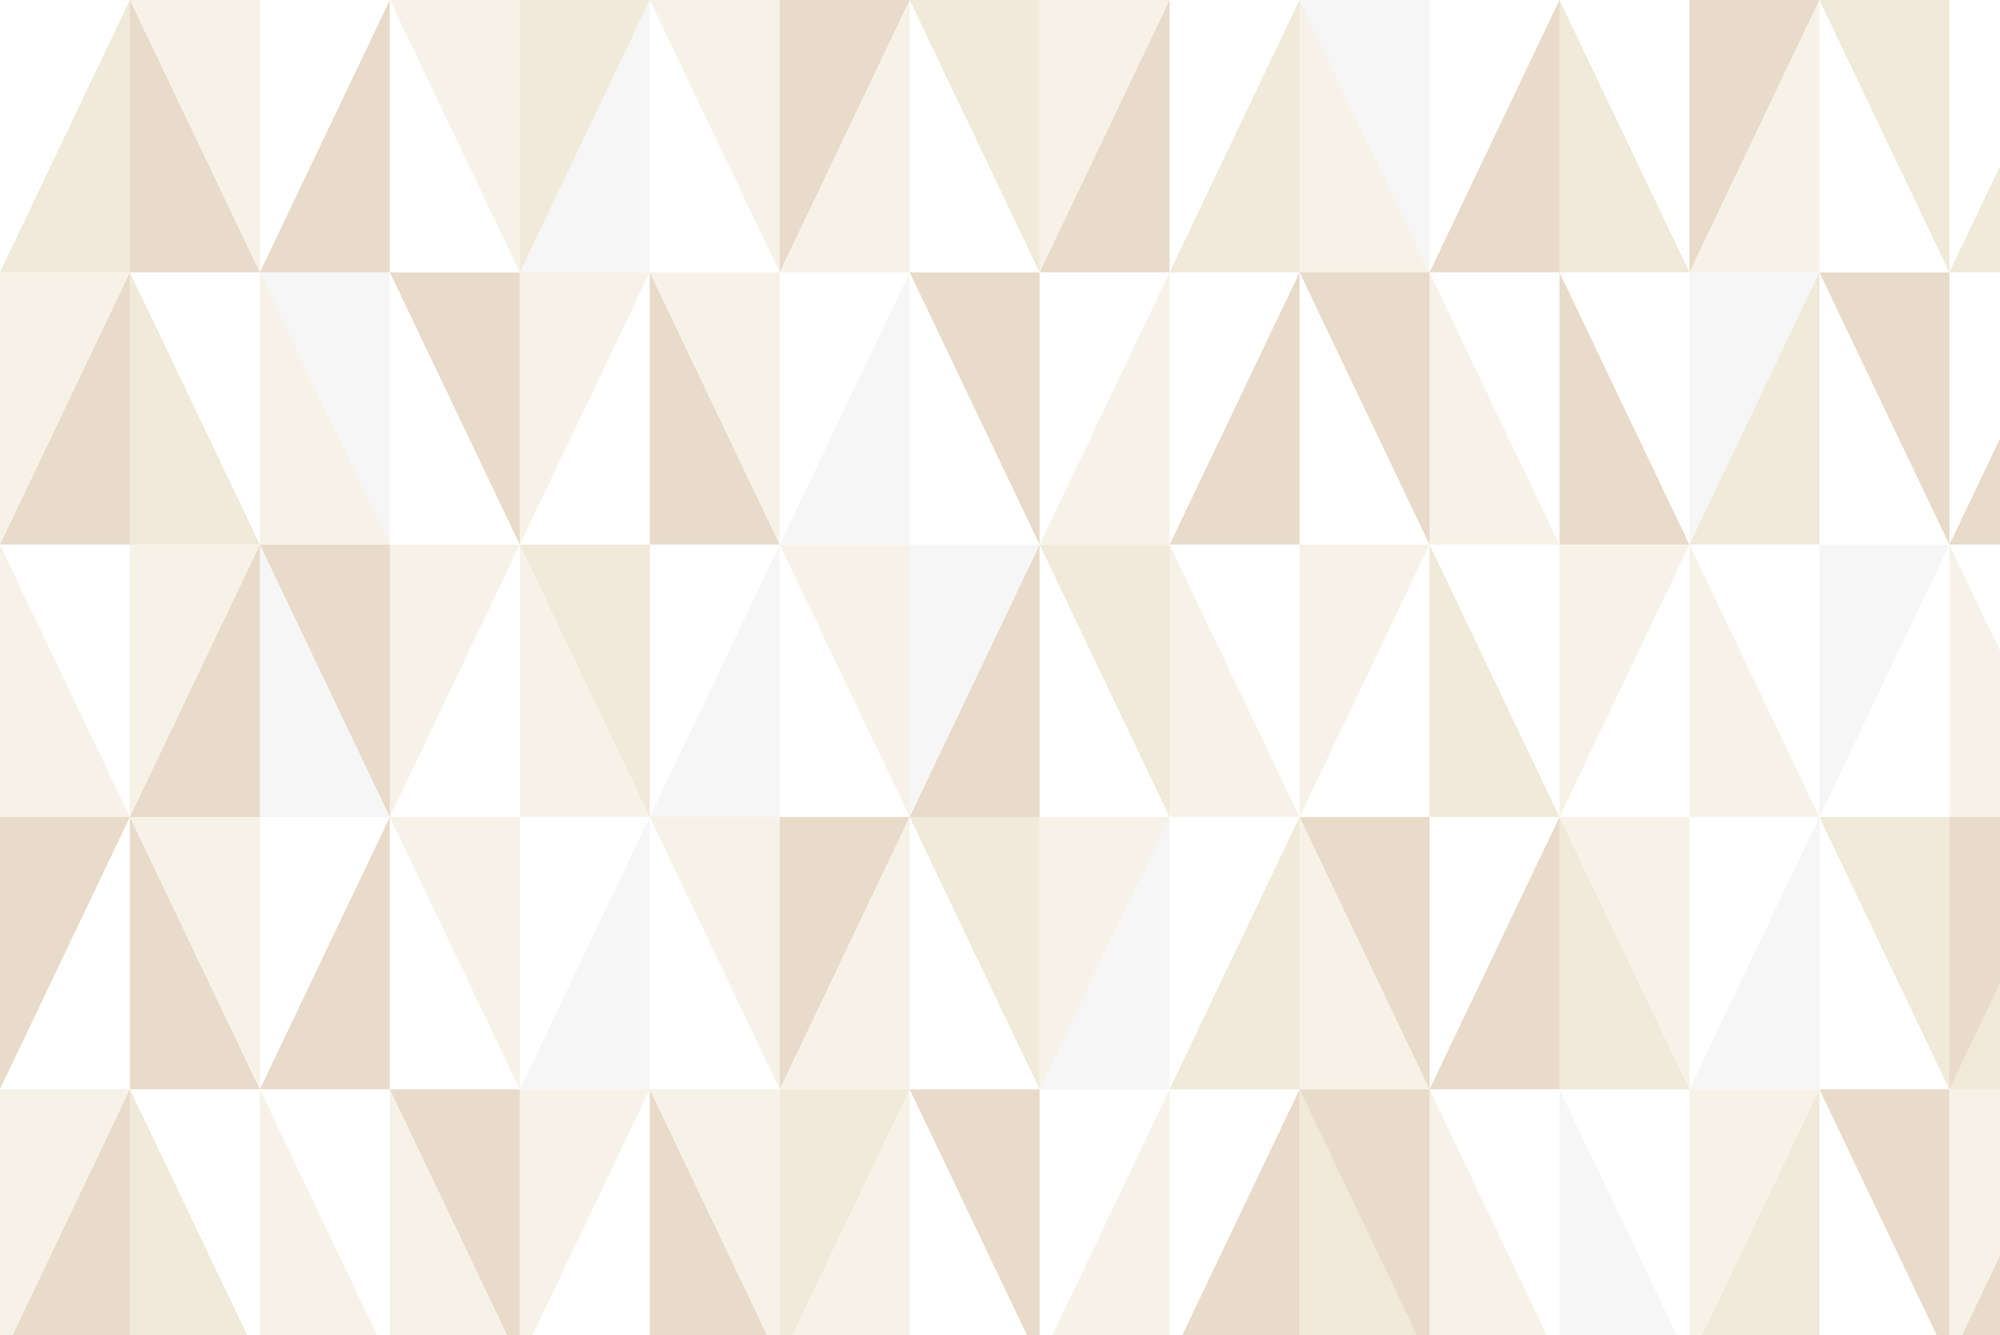             Papier peint design avec petits triangles beige sur intissé lisse nacré
        